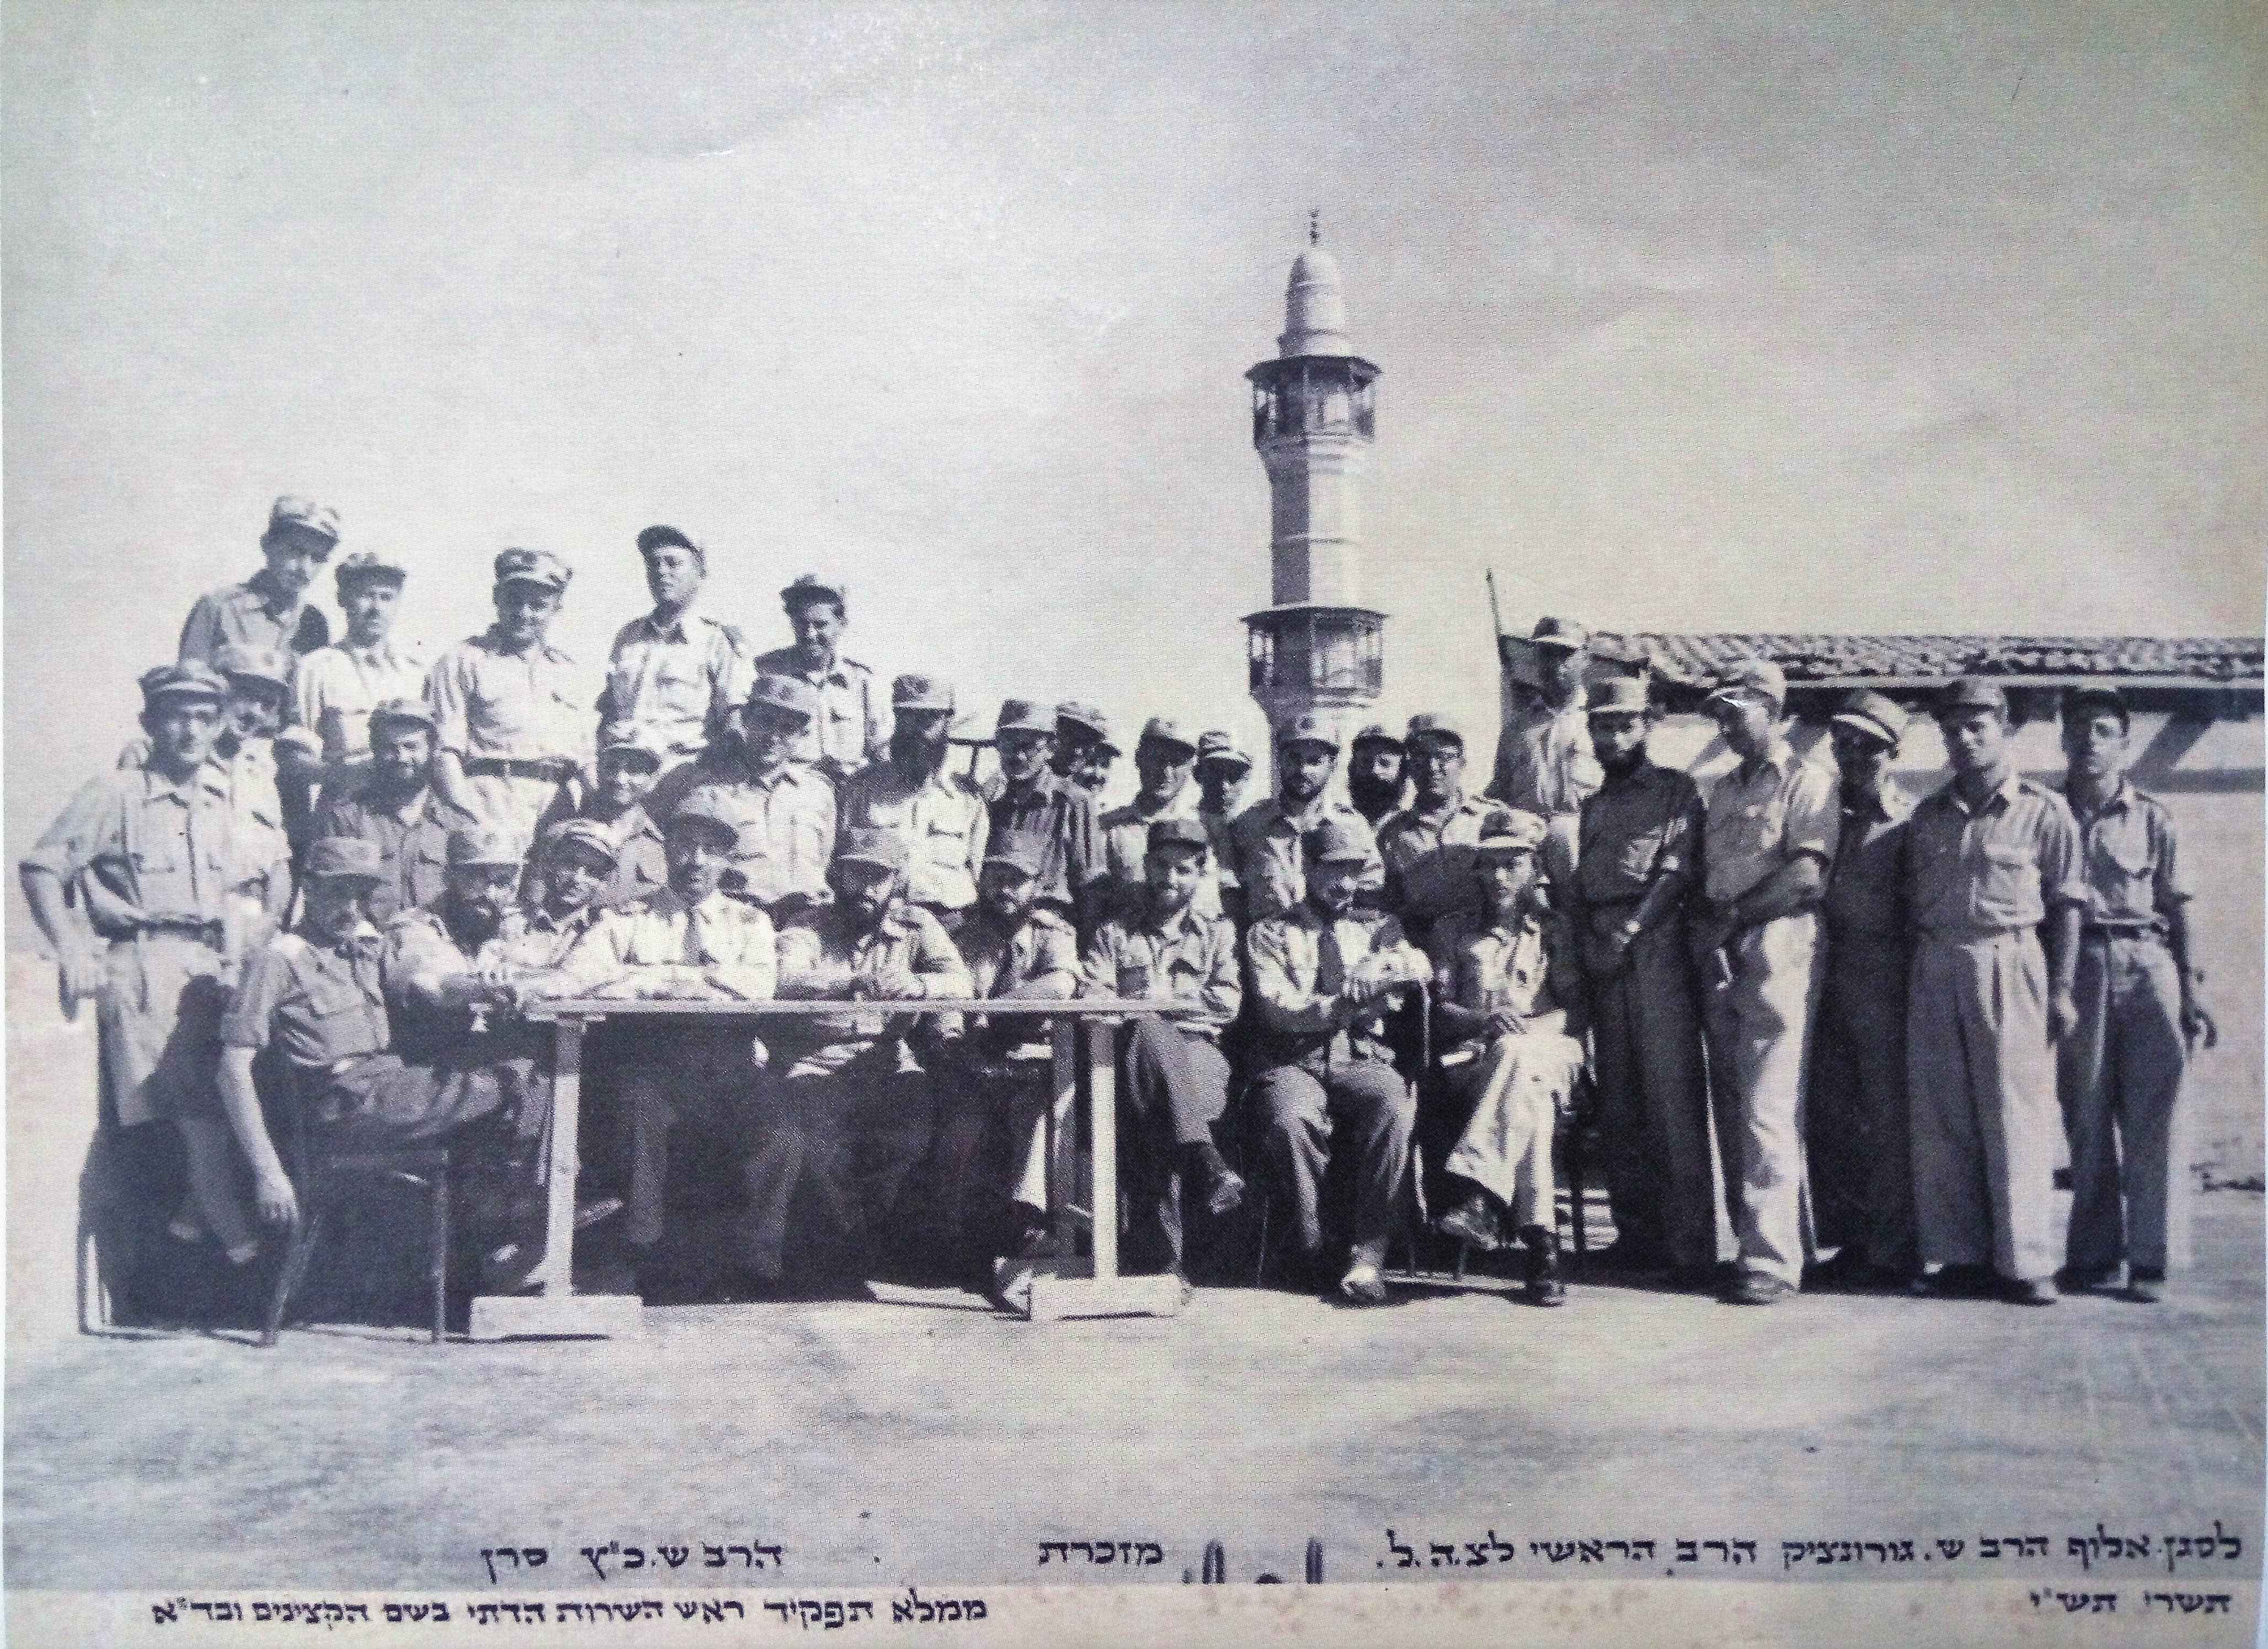 סגל הרבנות הצבאית והשירות הדתי על גג בסיס הרבנות ביפו 1950 - בעוז ותעצומות.jpg